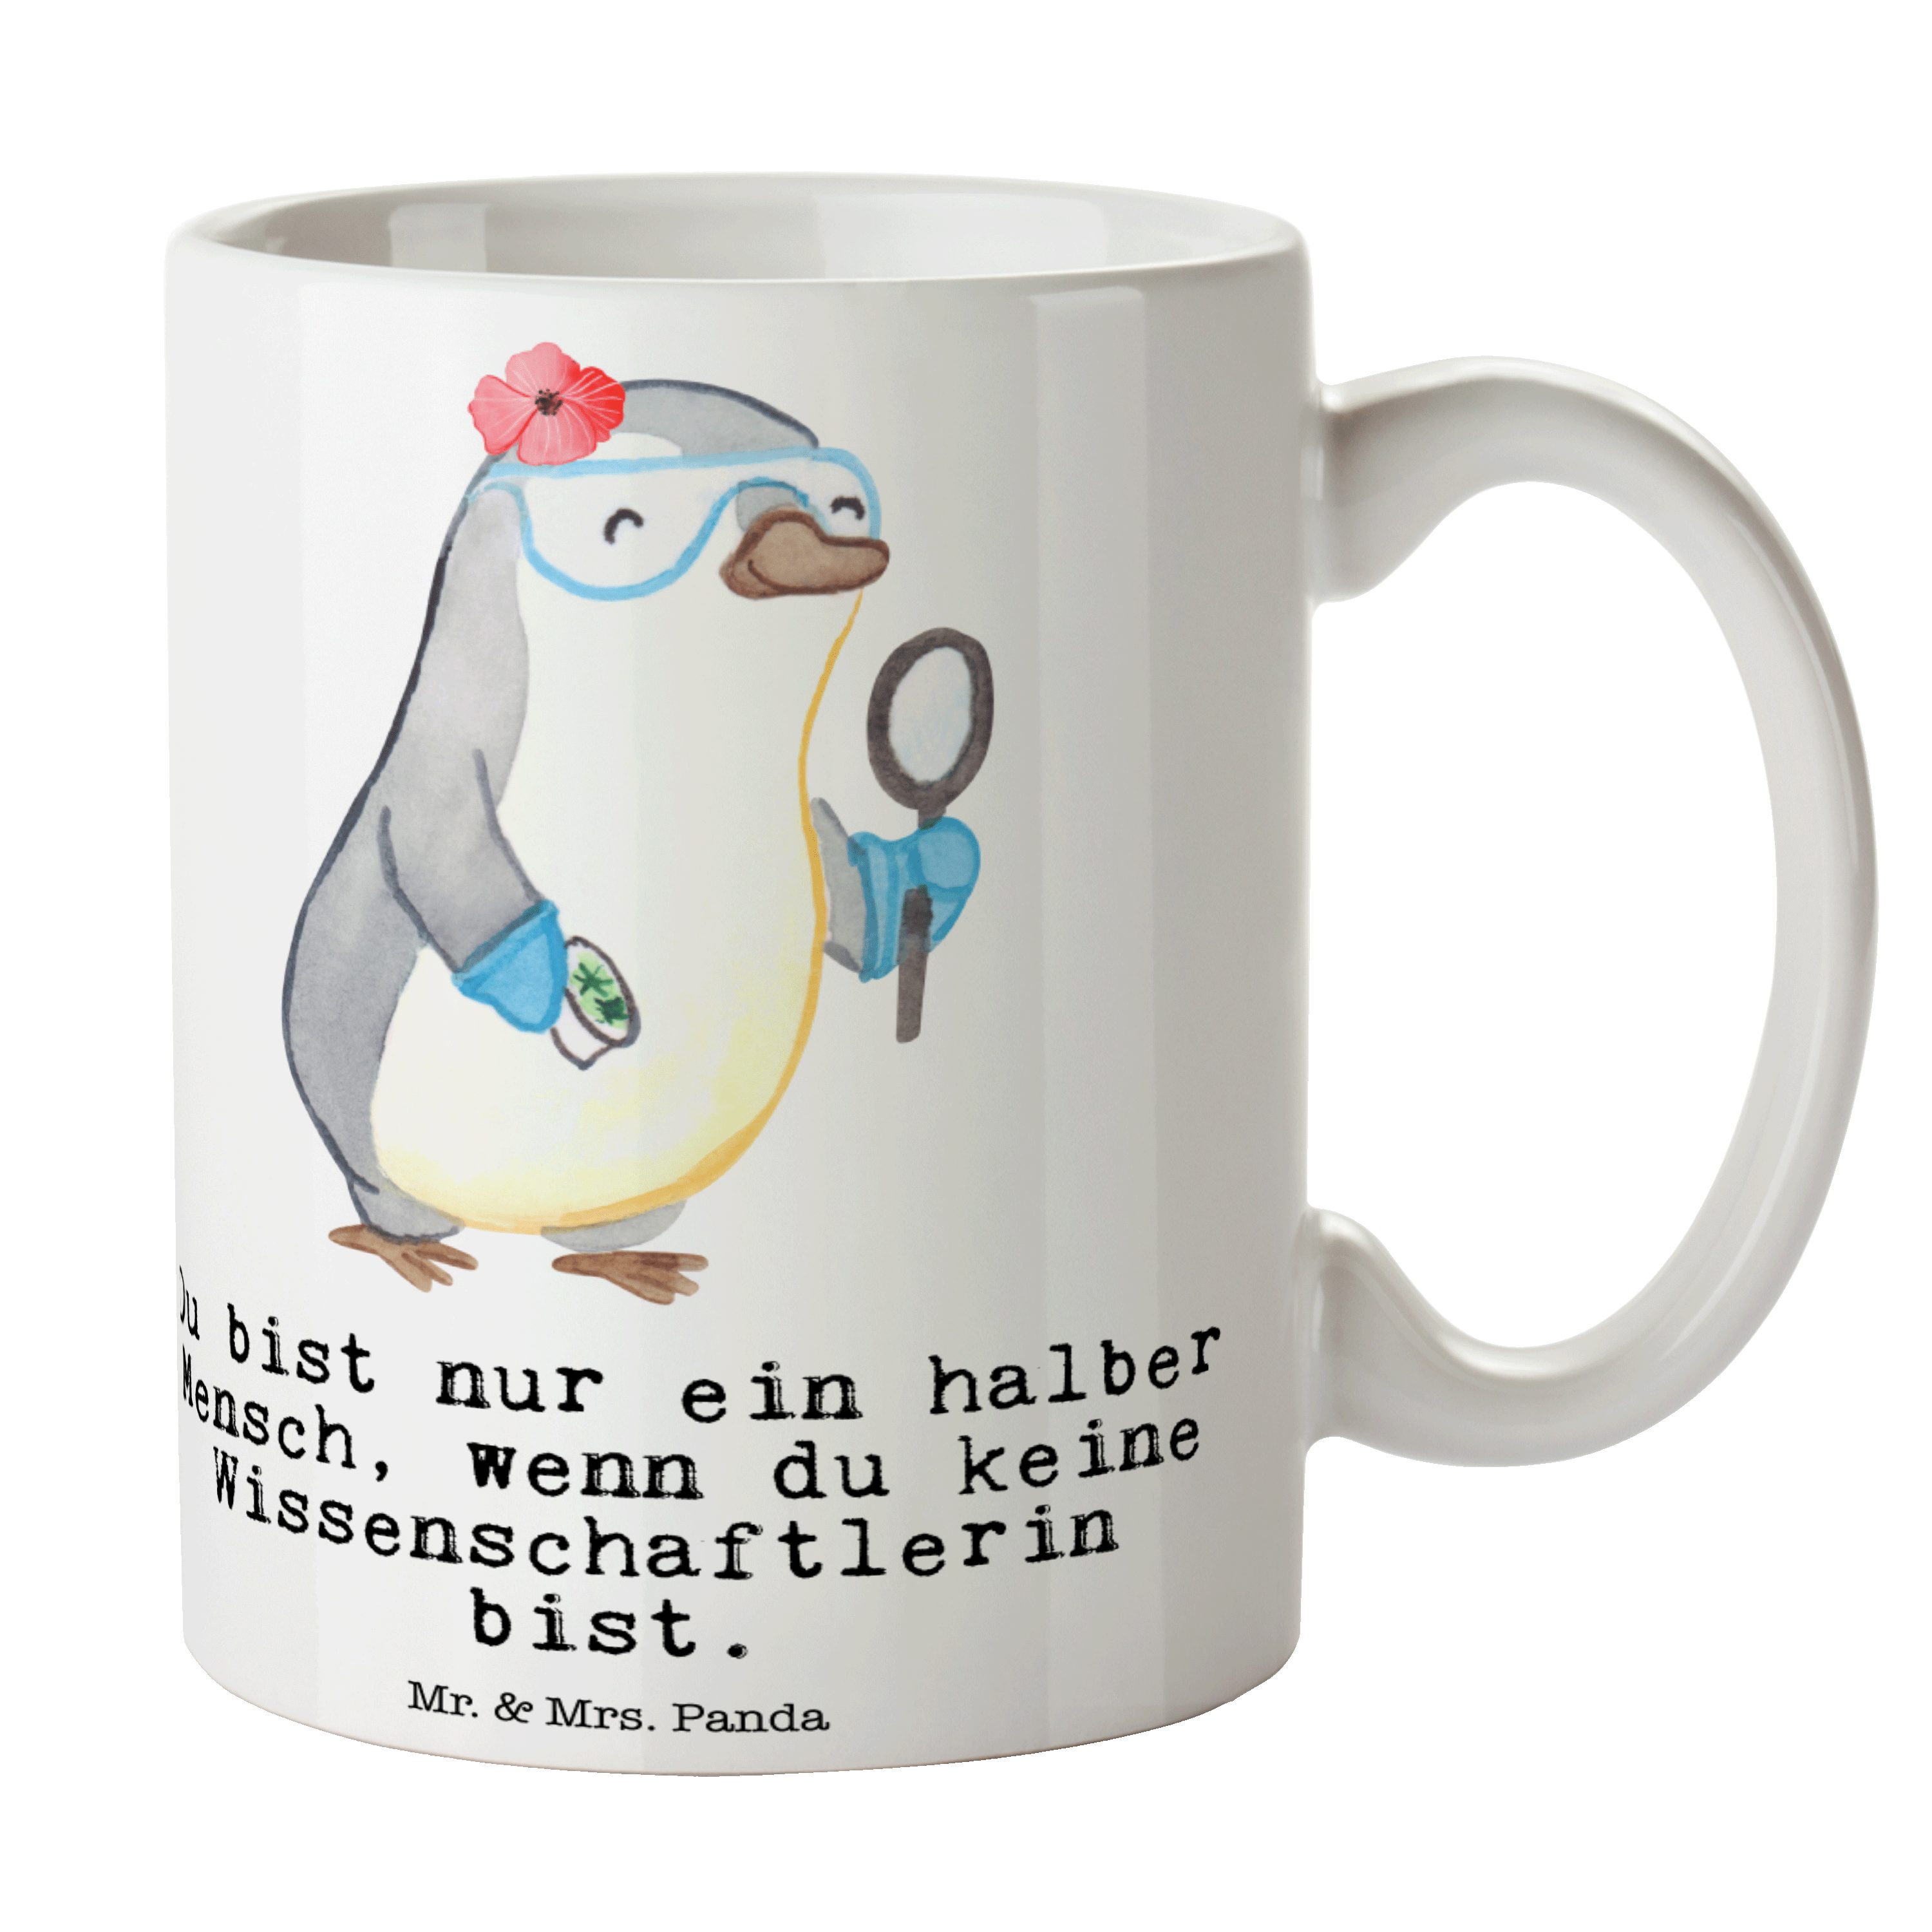 Mr. & Mrs. Panda Tasse Wissenschaftlerin mit Herz - Weiß - Geschenk, Tasse, Kaffeetasse, Aka, Keramik